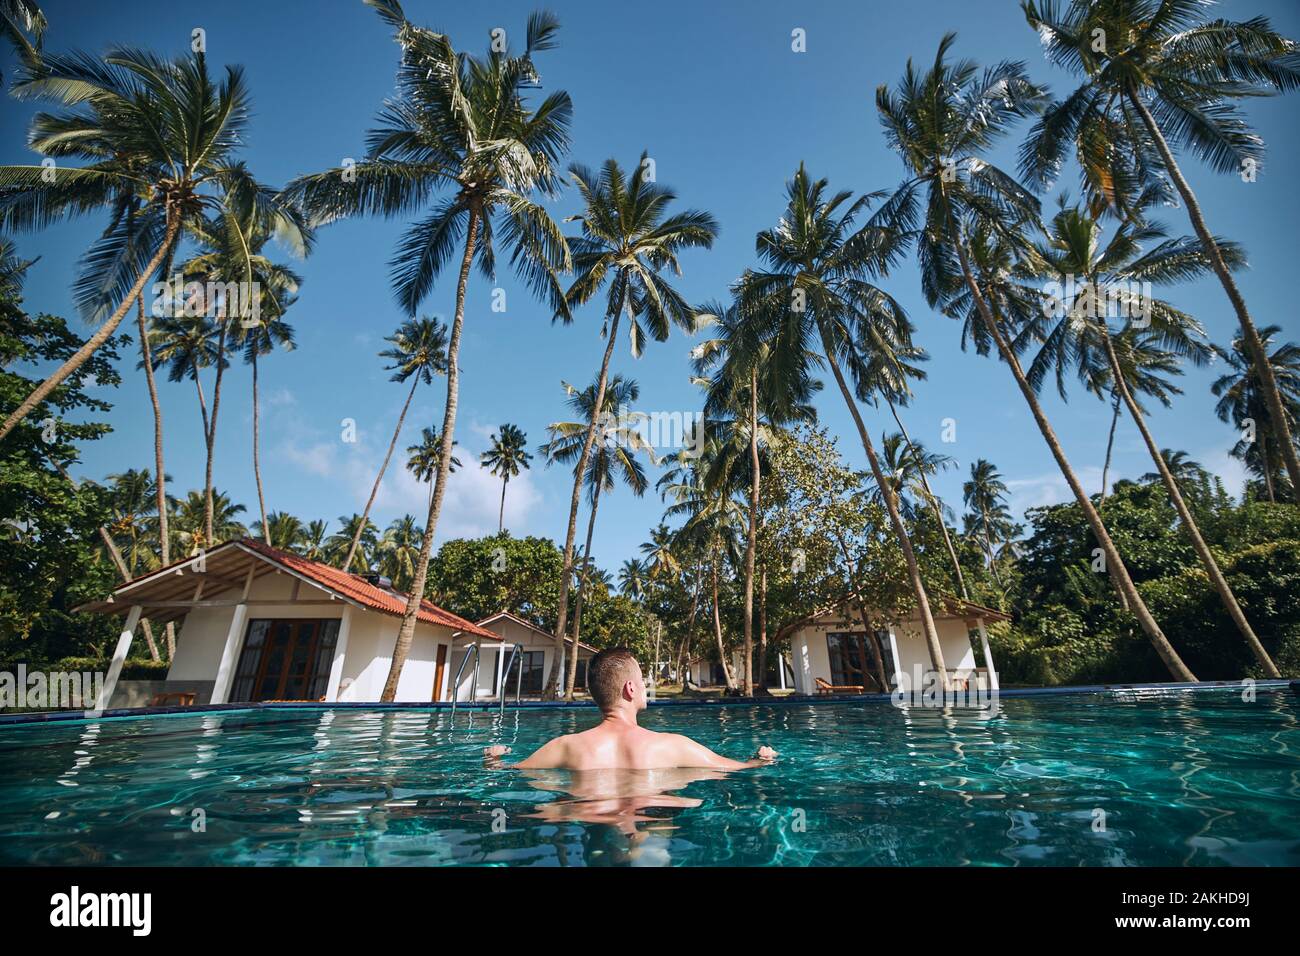 Entspannung im Pool inmitten von Kokospalmen. Junger Mann in Wasser, das gegen die Bungalows der Ferienanlage ruht. Stockfoto